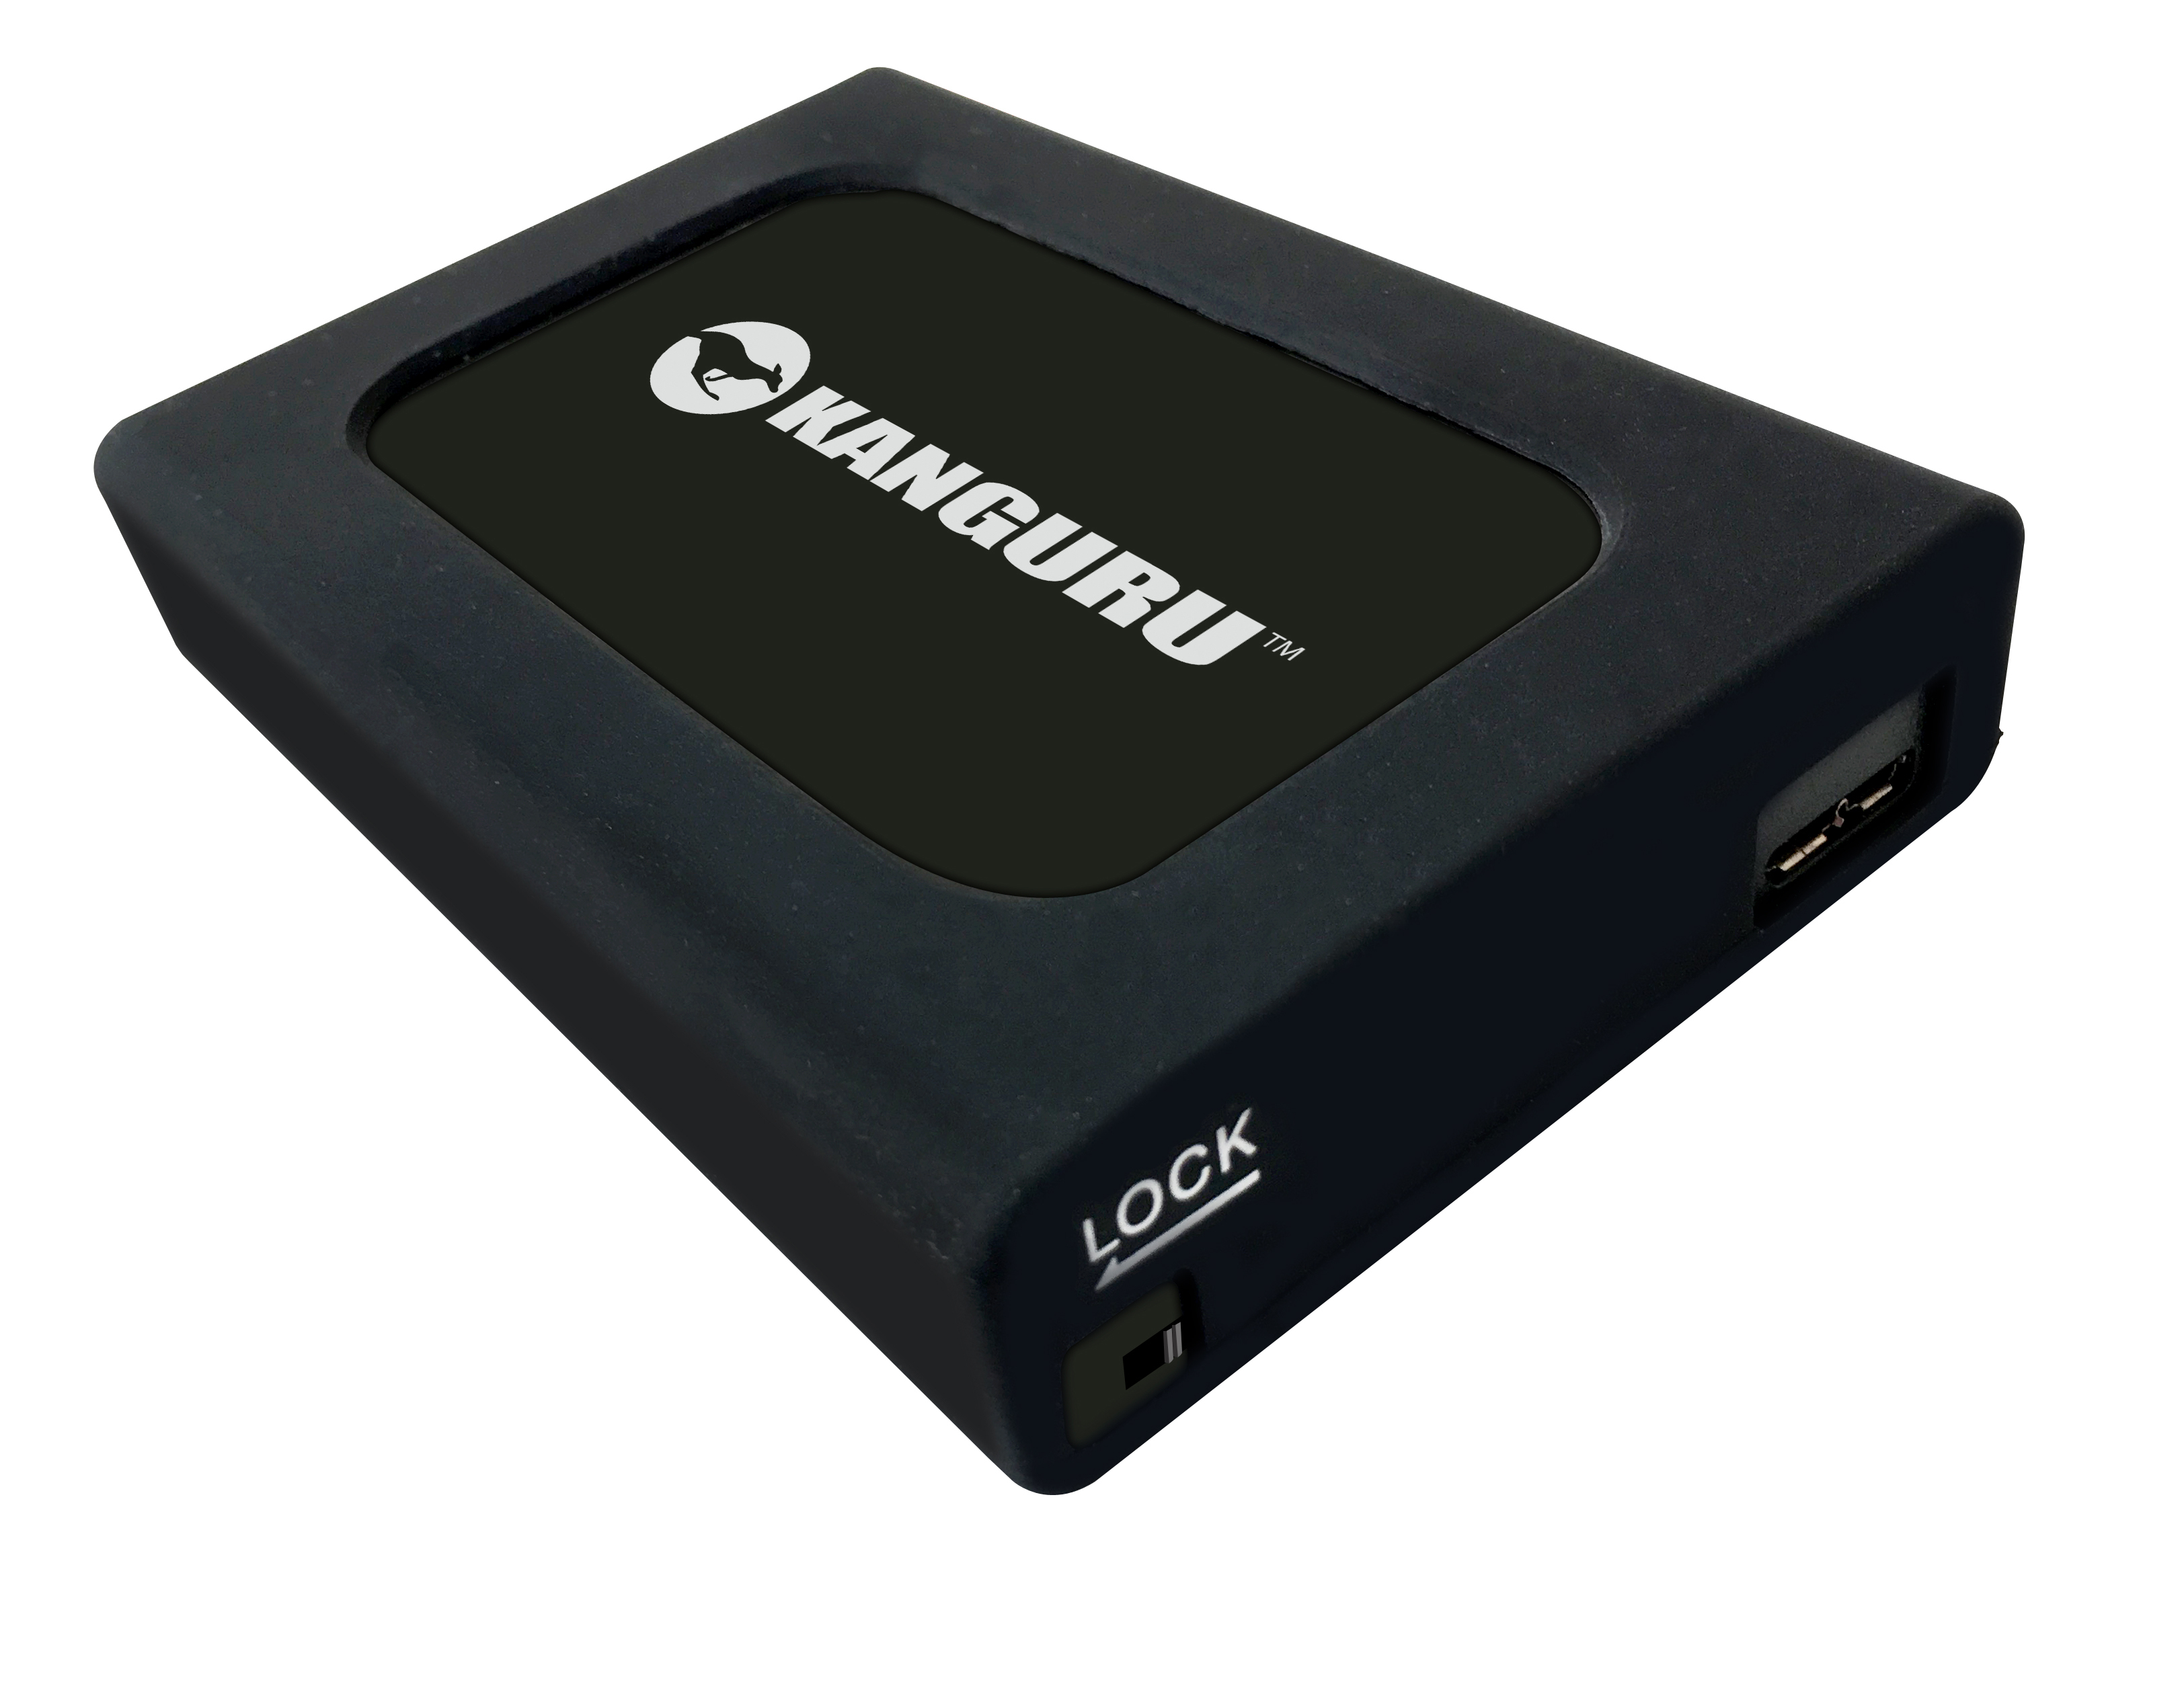 Kanguru 4TB UltraLock HDD USB 3.0 External Hard Drive - image 2 of 2